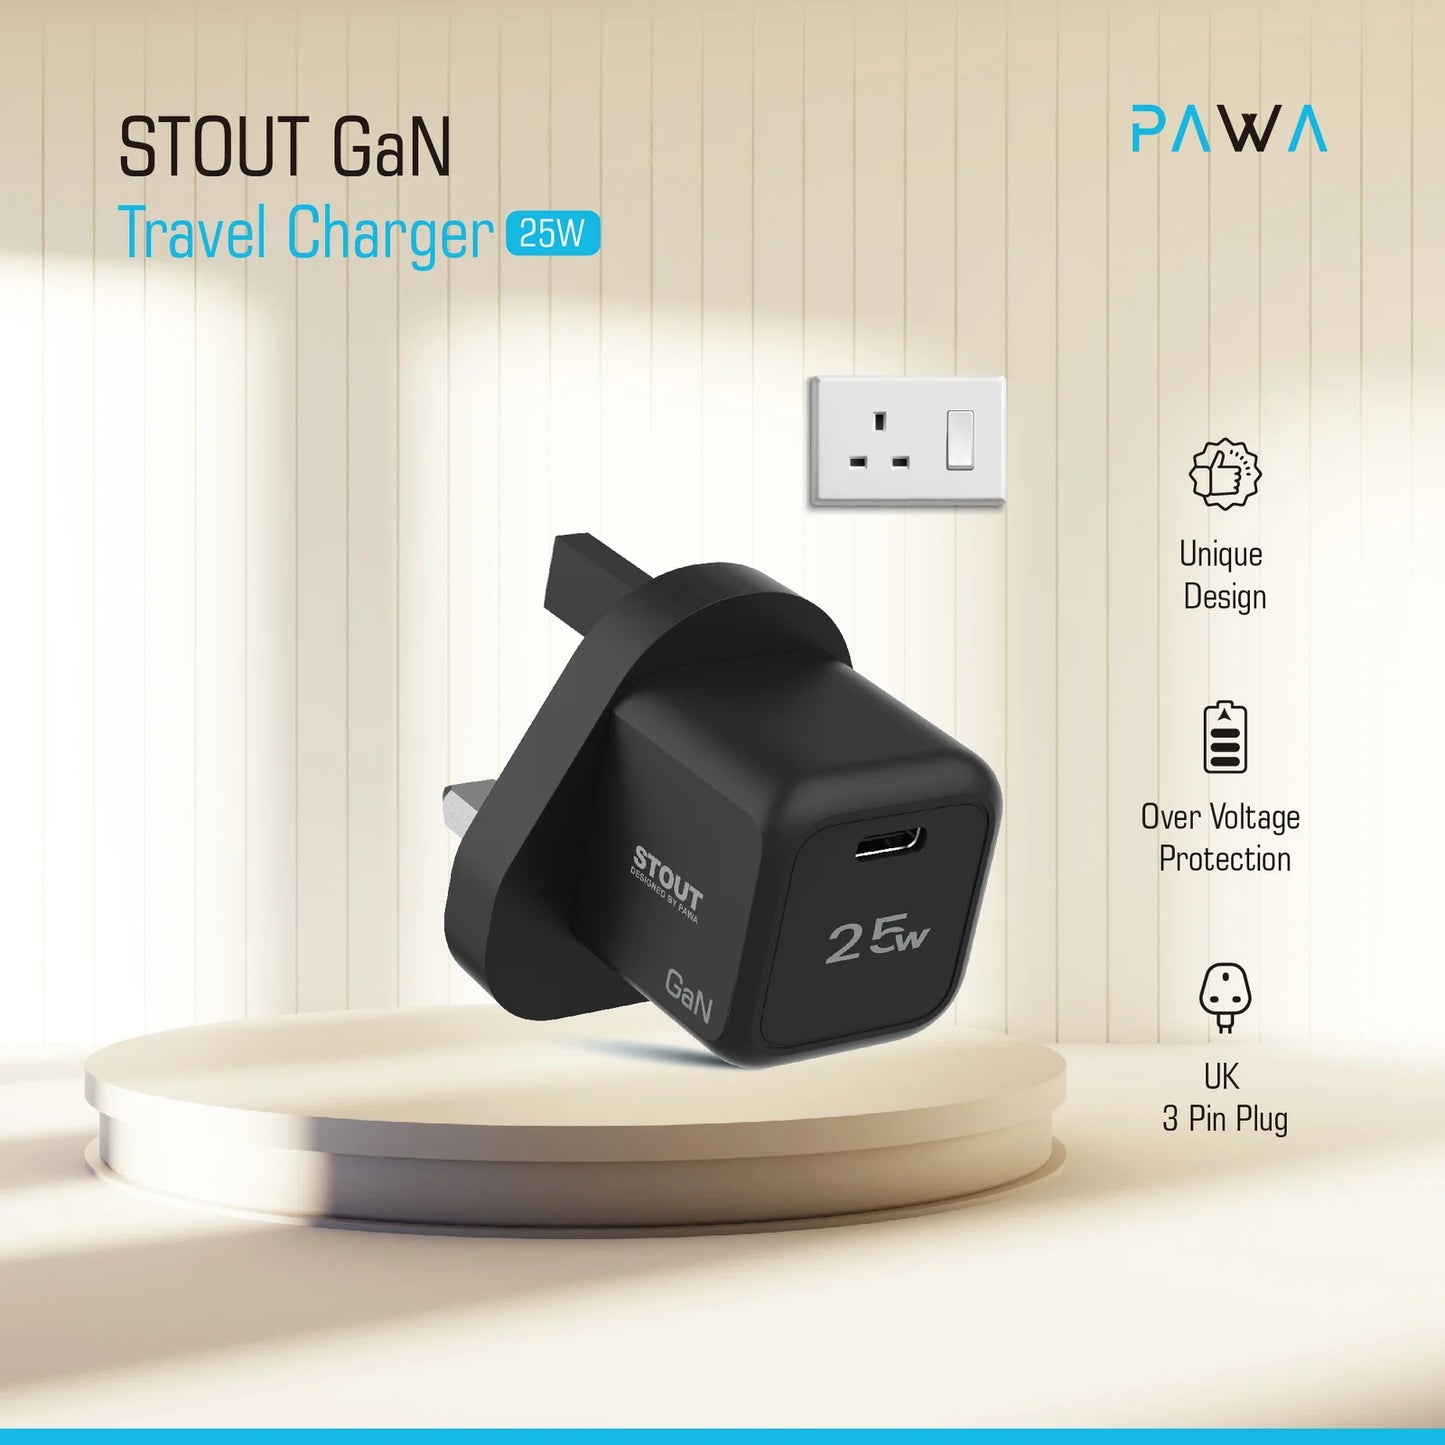 Pawa Stout GaN Travel Charger 25W UK Standard